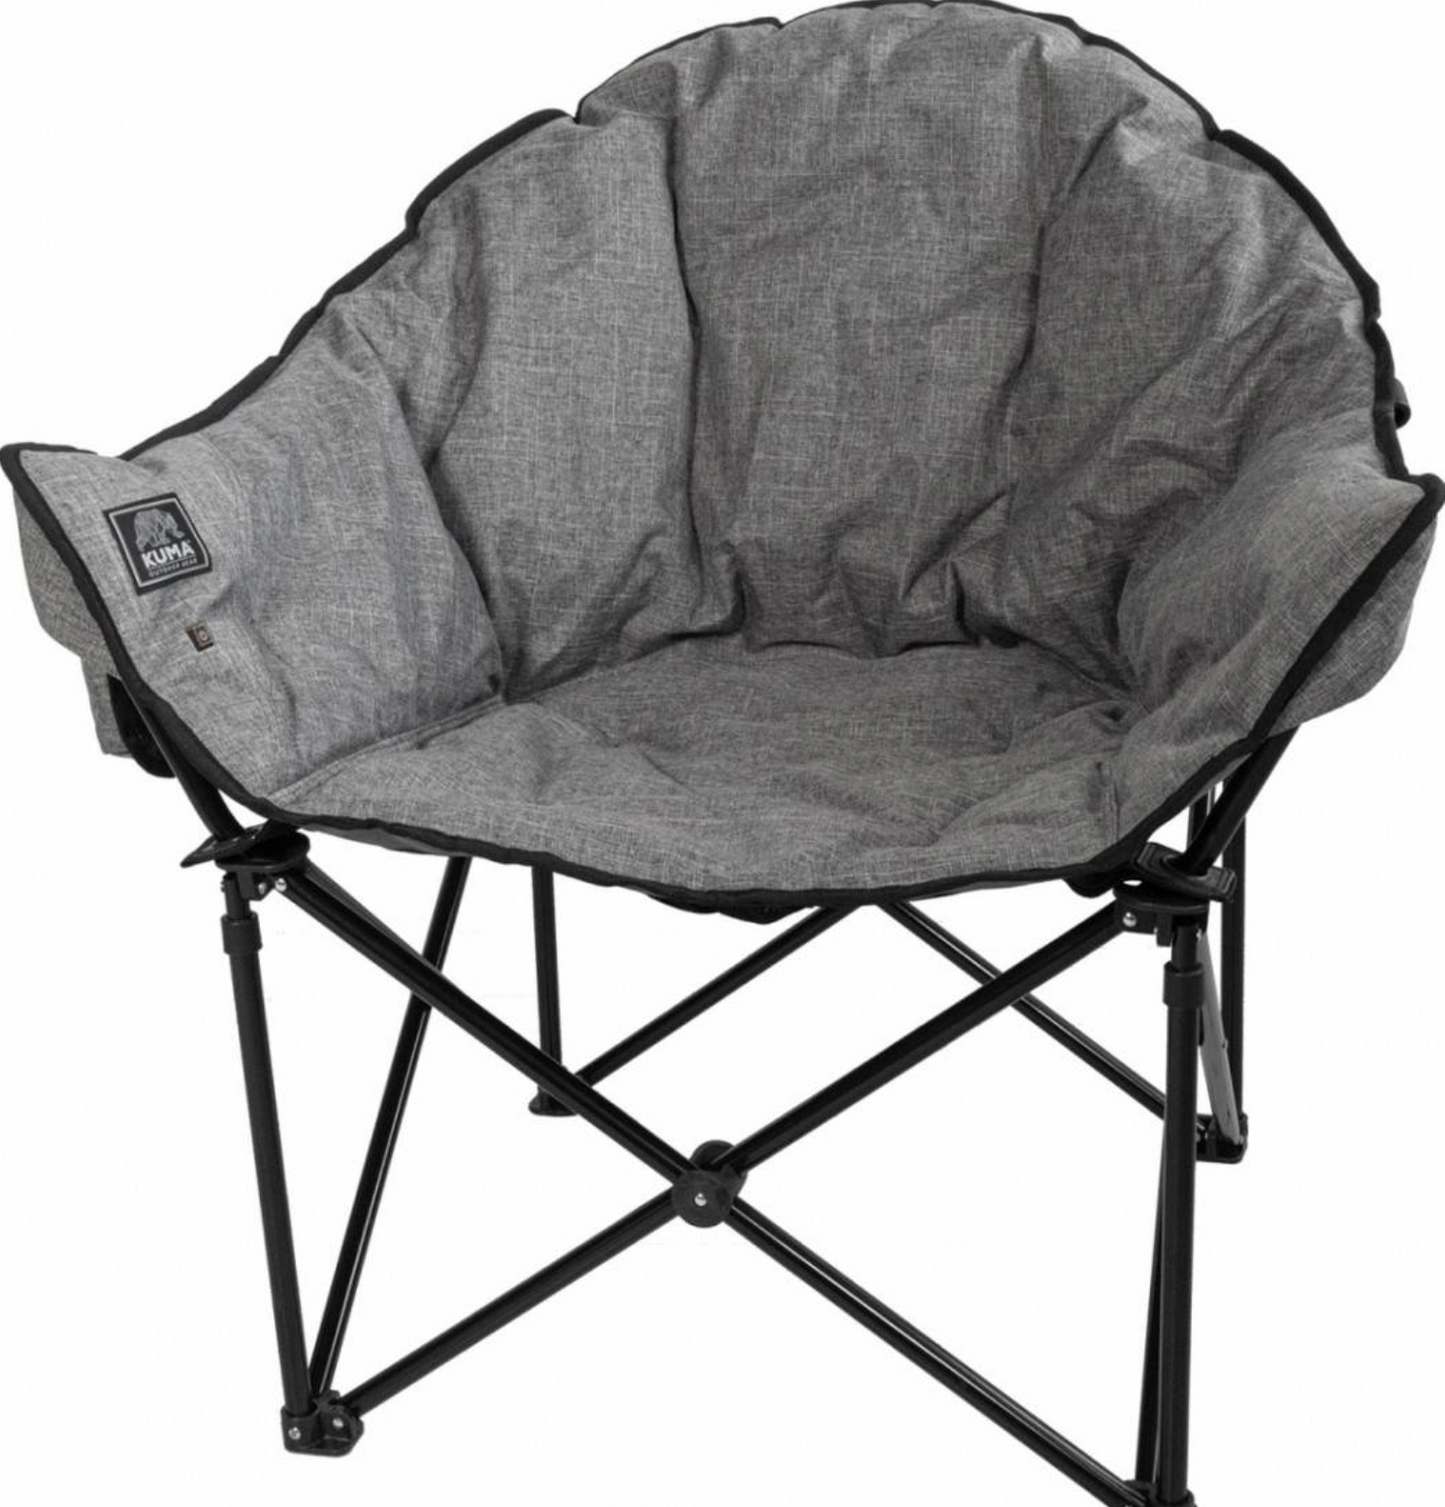 KUMA Lazy Bear Heated Chair - Heather Grey, with Carry Bag